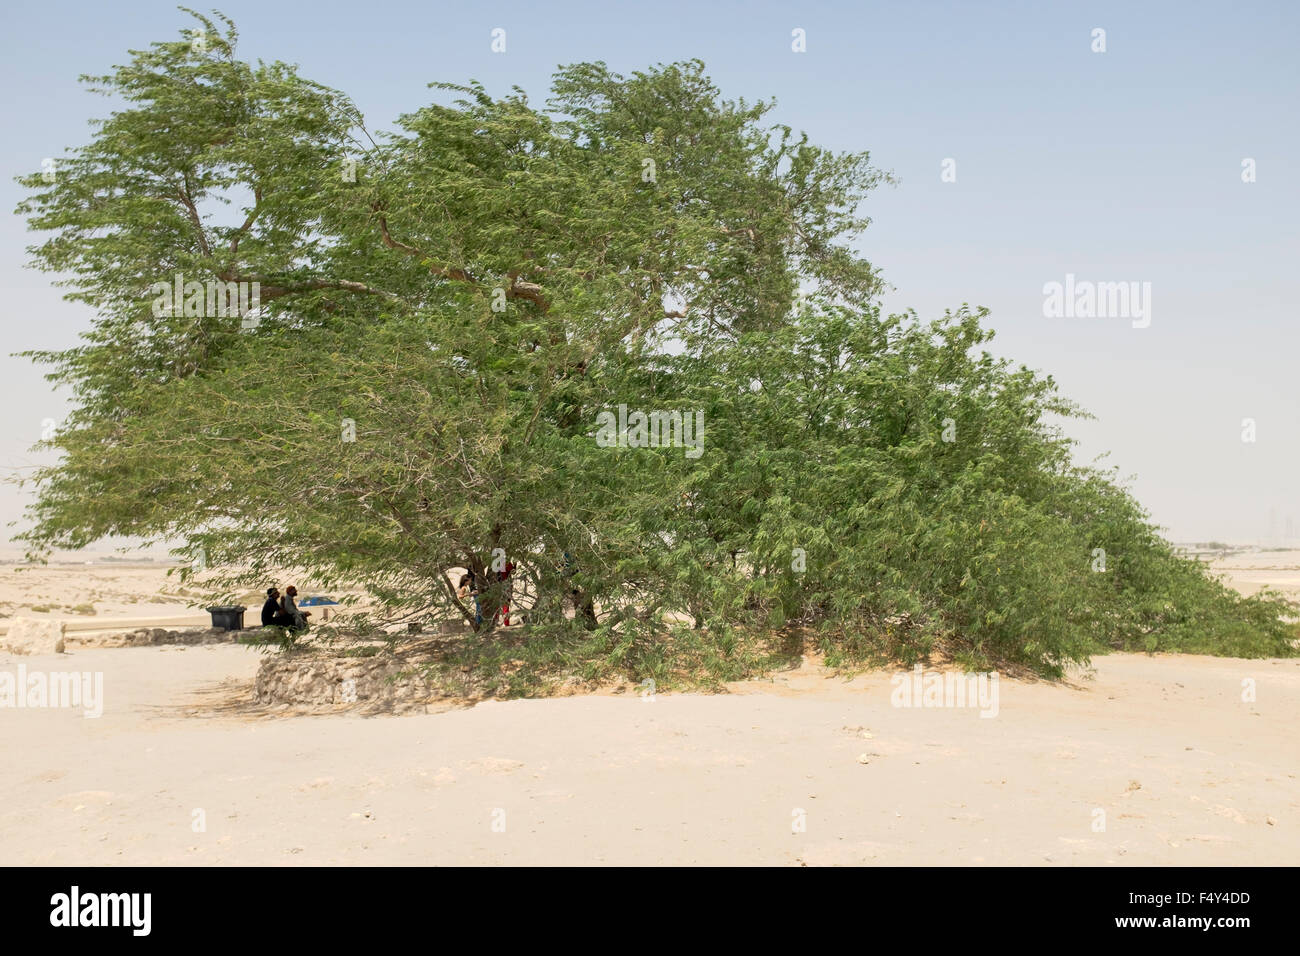 Baum des Lebens in der Wüste außerhalb von Manama Bahrain im Nahen Osten. Stockfoto